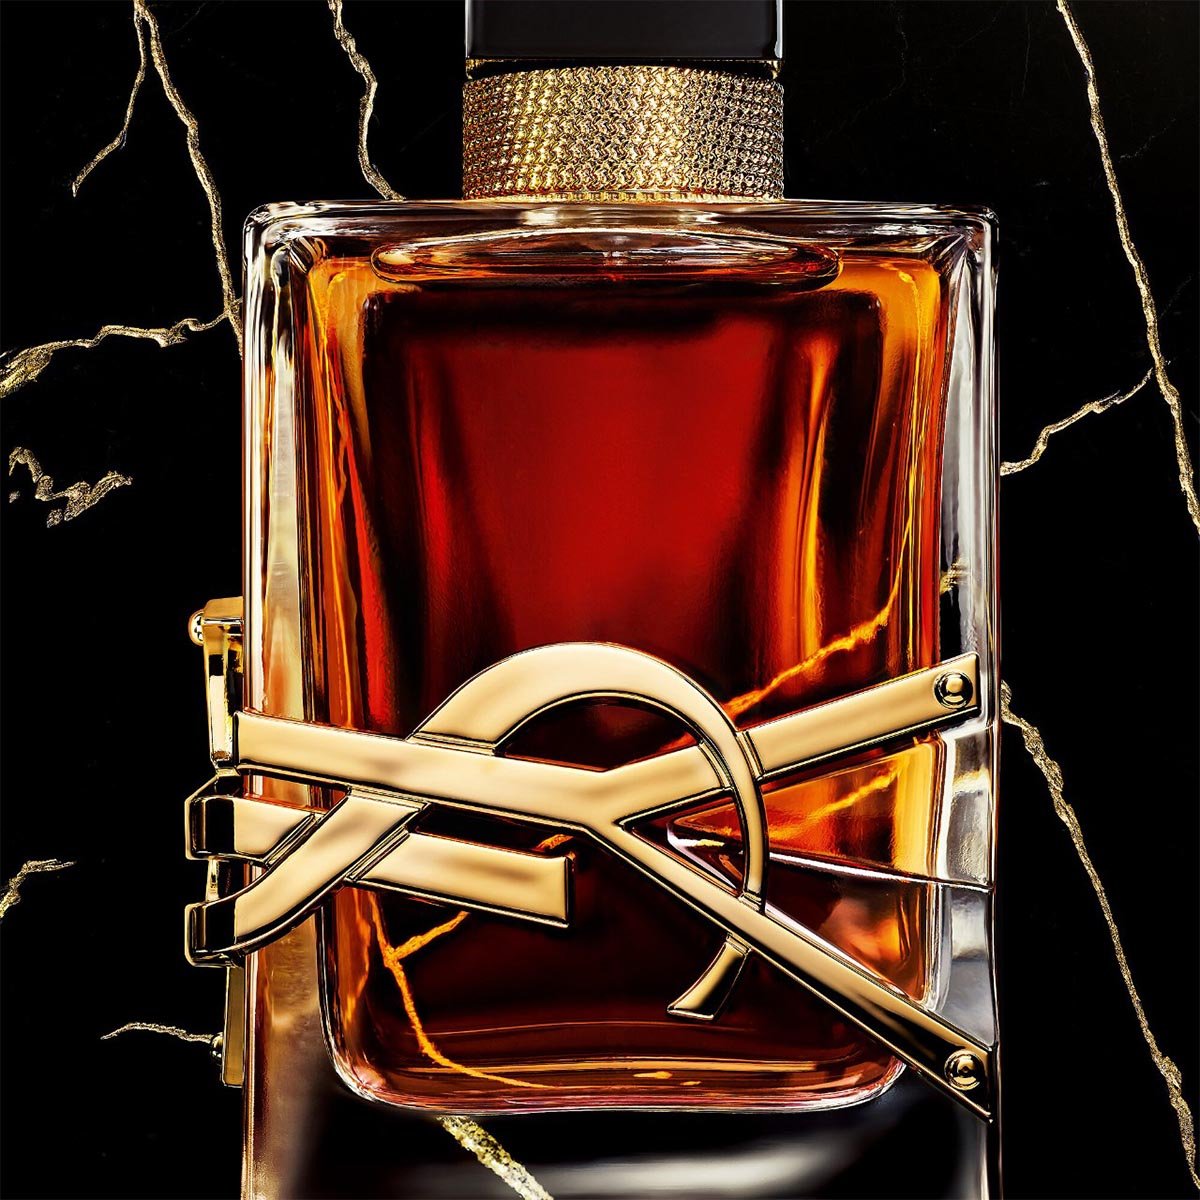 Yves Saint Laurent Libre Le Parfum | My Perfume Shop Australia